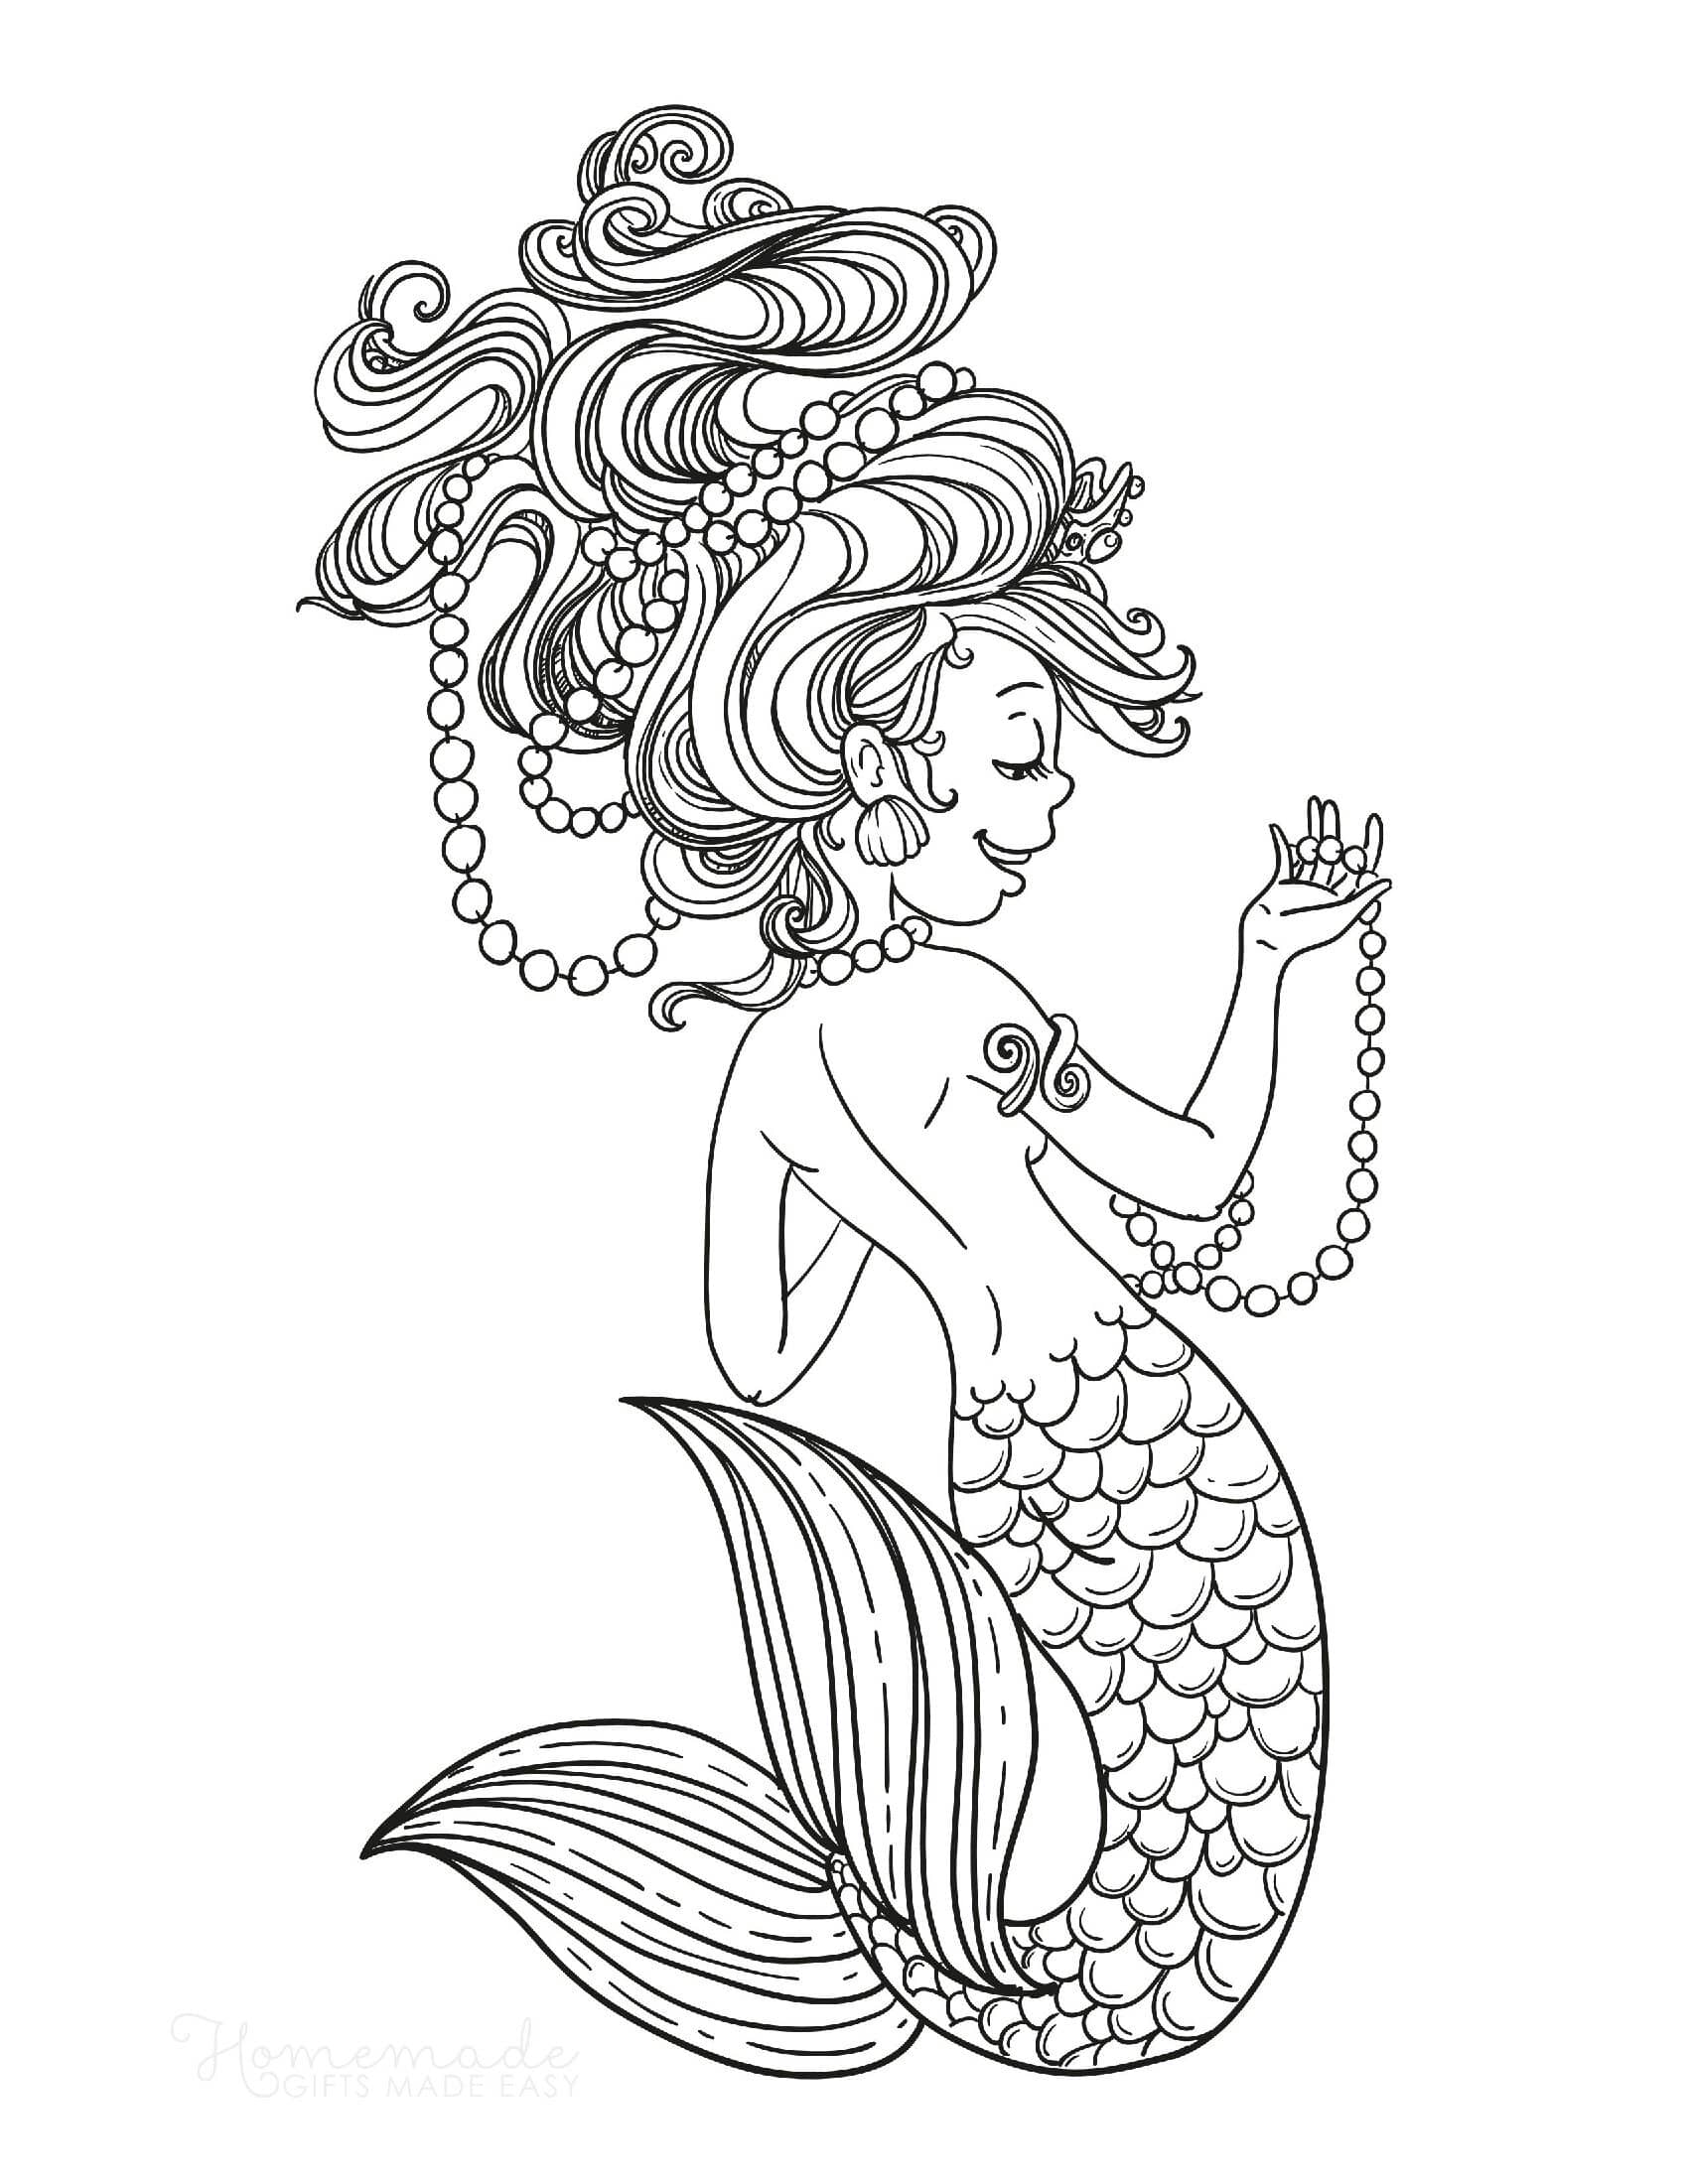 Mermaid strings pearls  wild hair Coloring Page